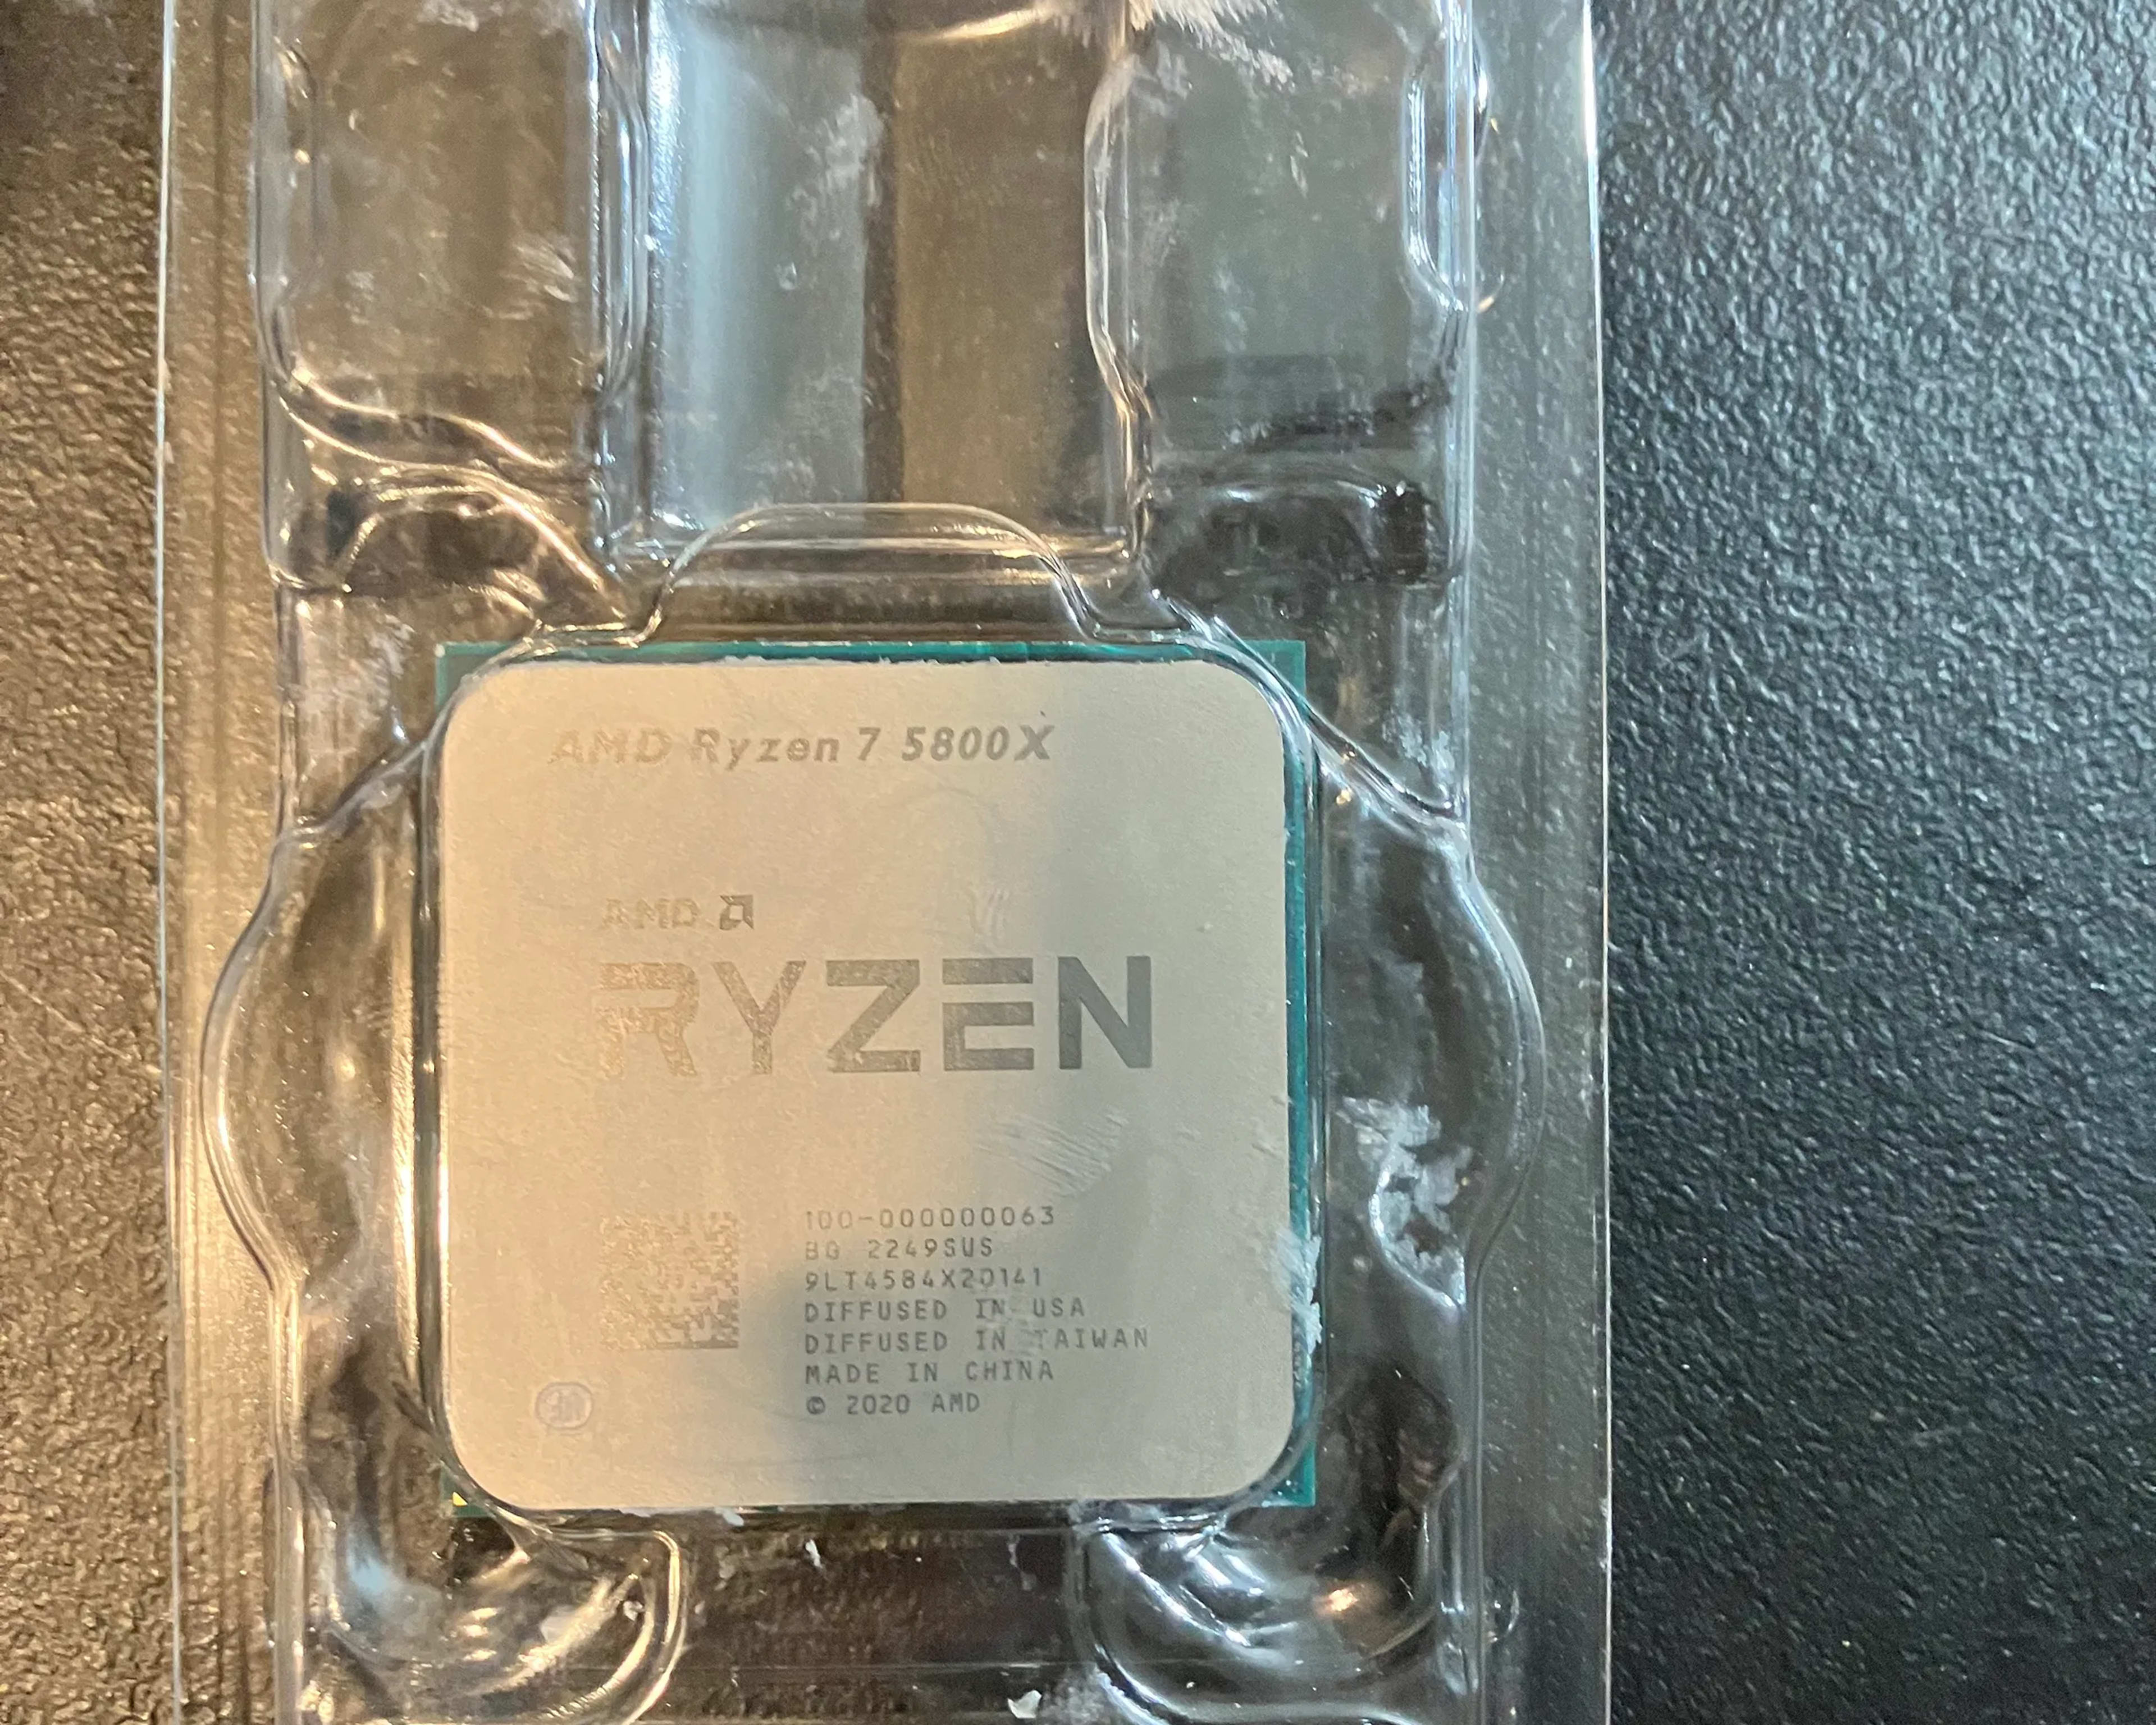 Ryzen 7 5800x 8 Core 16 Thread Processor 4.7 GHZ Used: Like-New